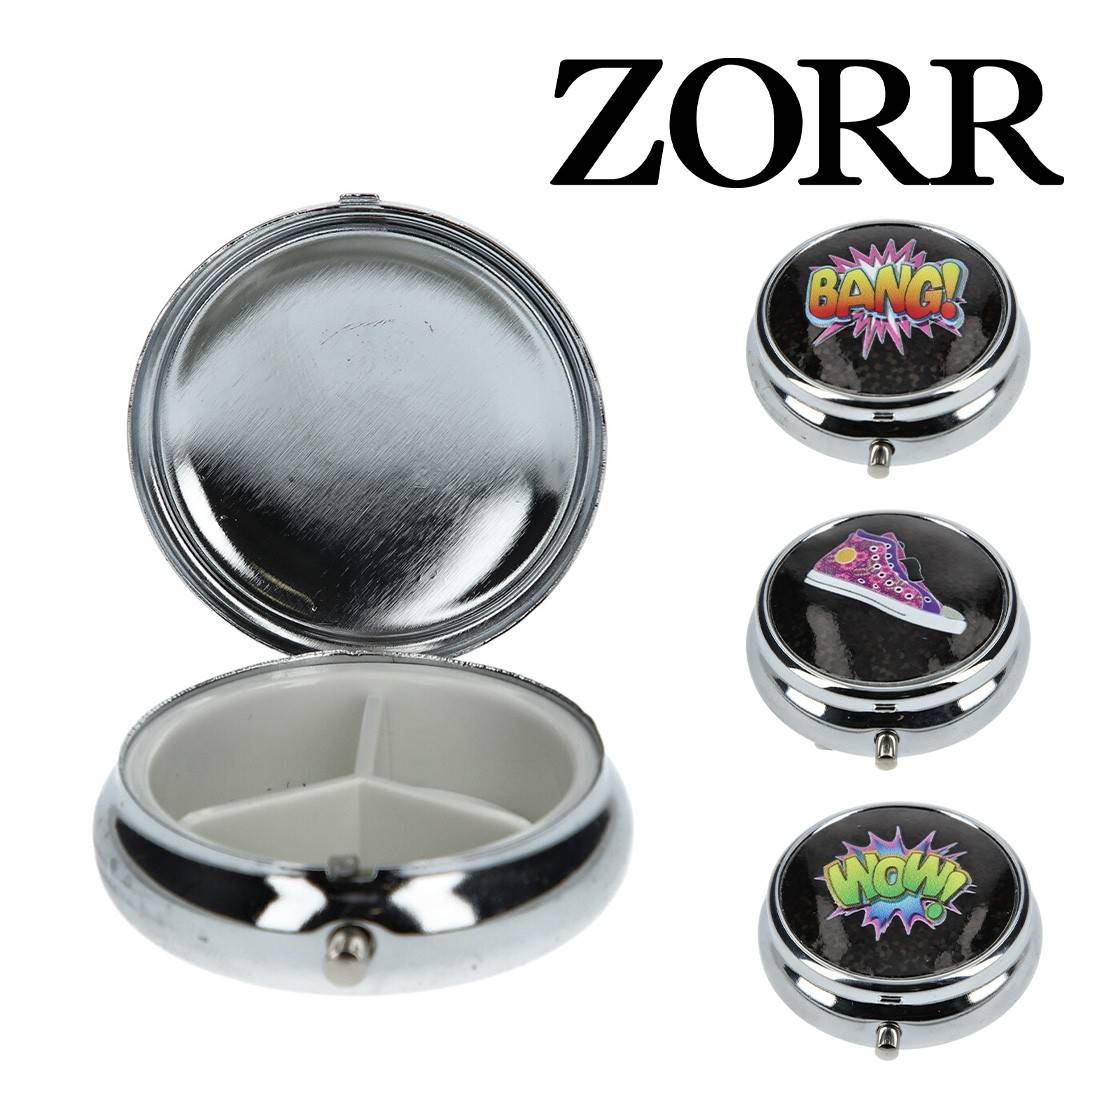 Cendrier de poche Zorr - 3,90€